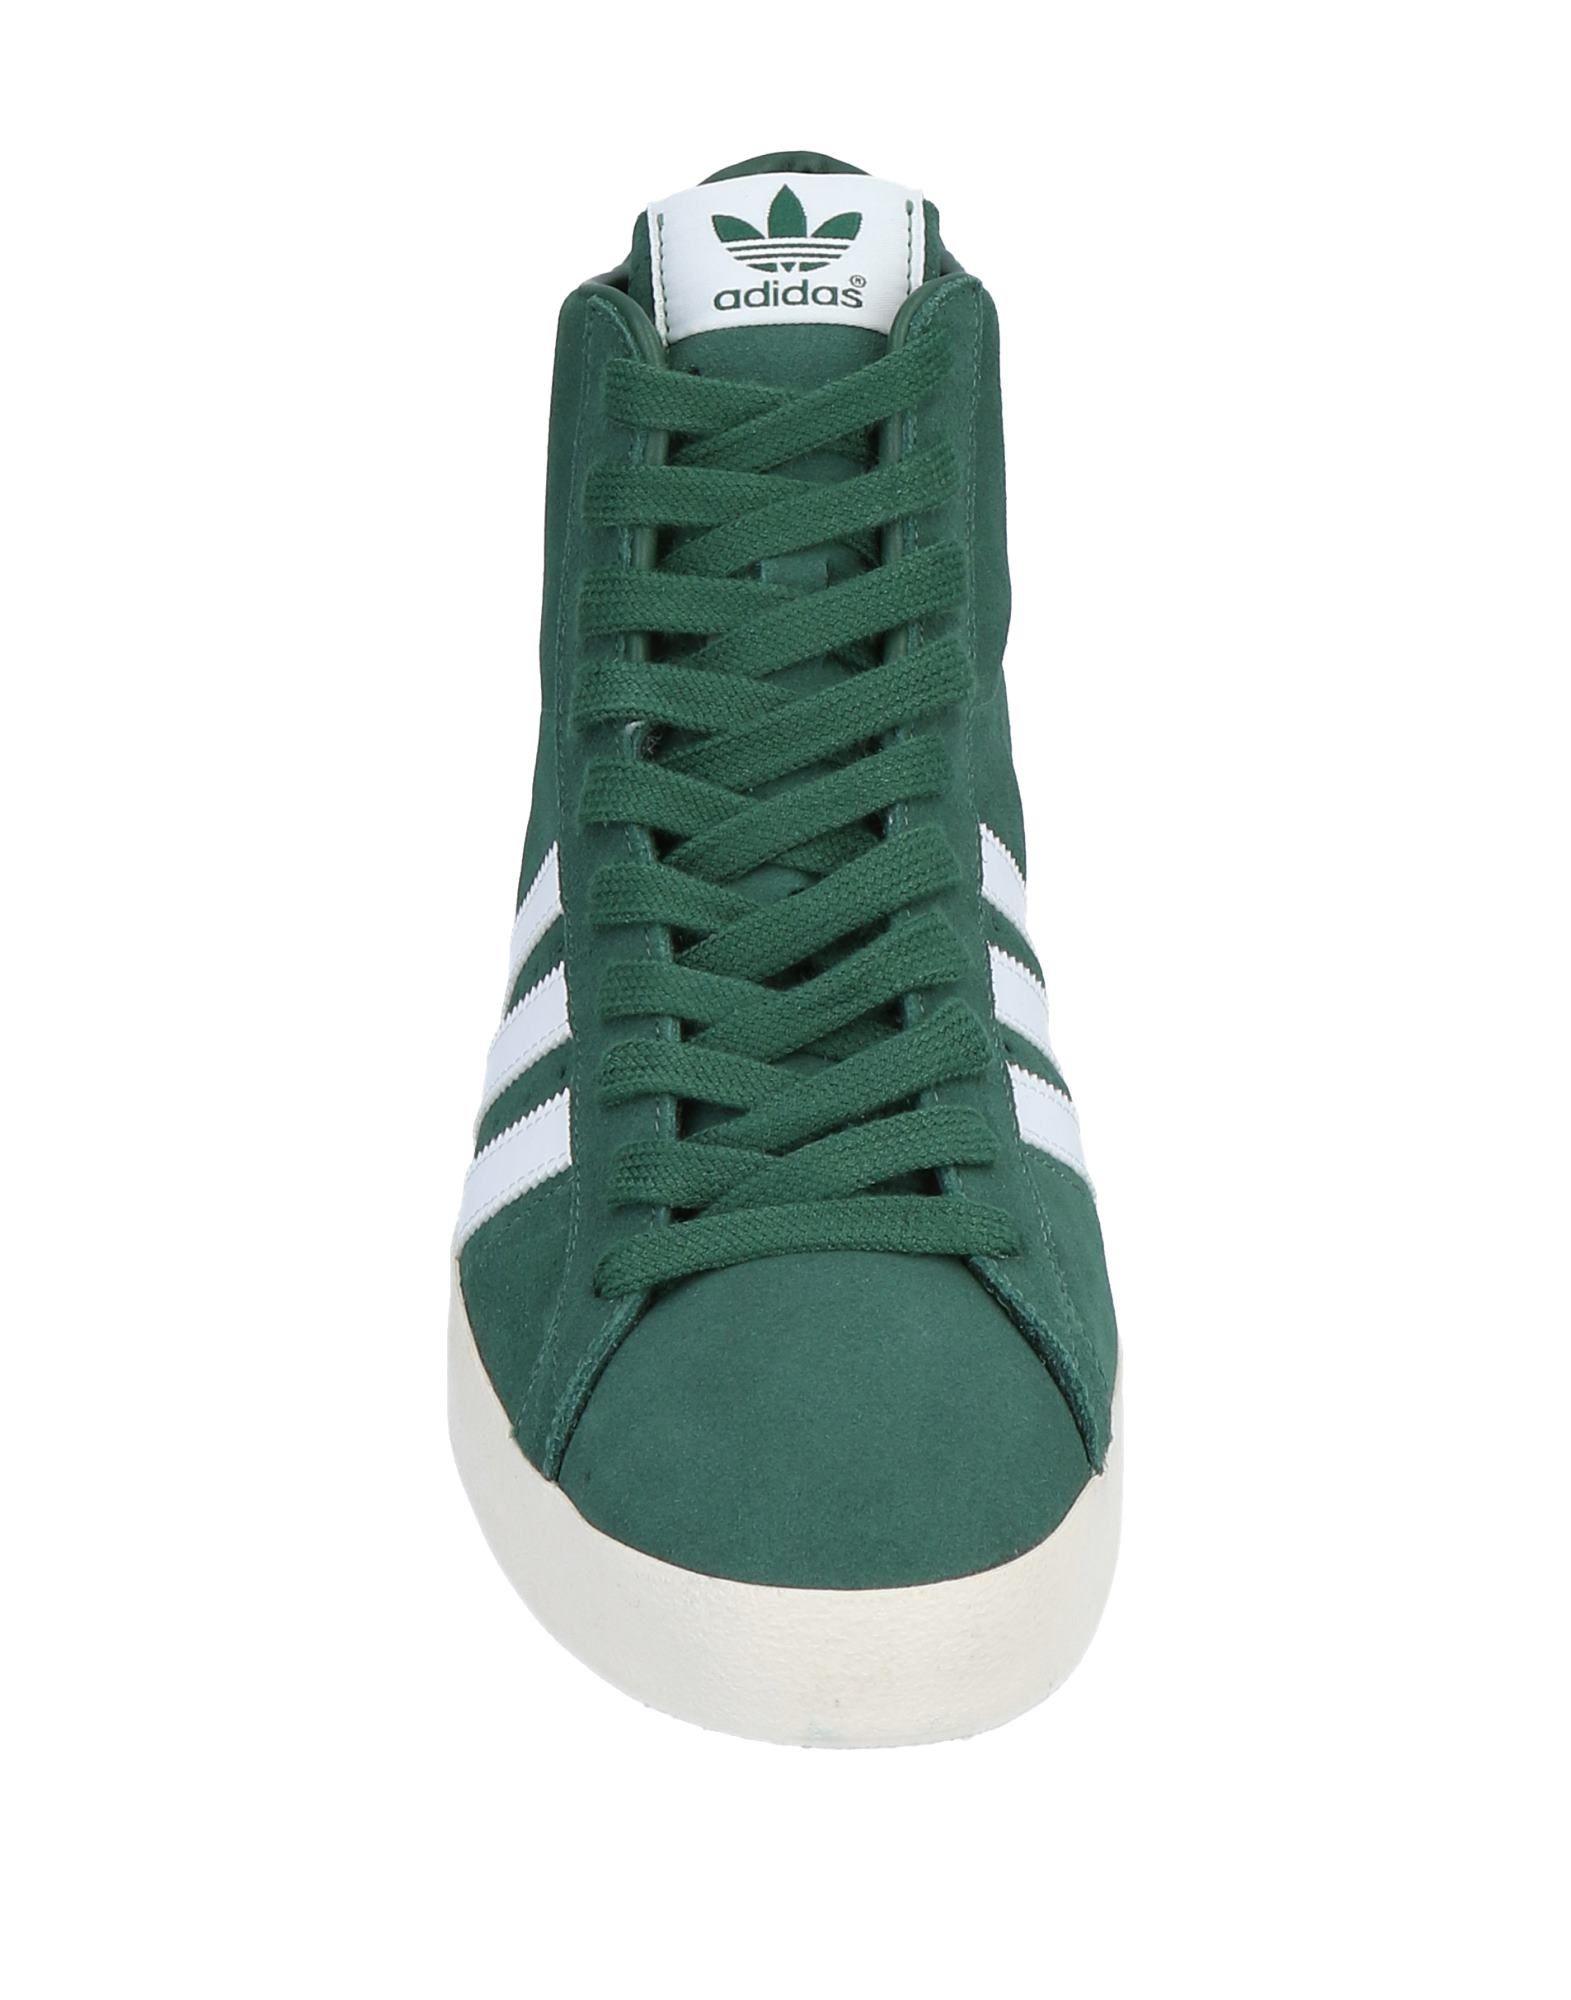 adidas Originals Suede High-tops & Sneakers in Dark Green (Green) for Men -  Lyst